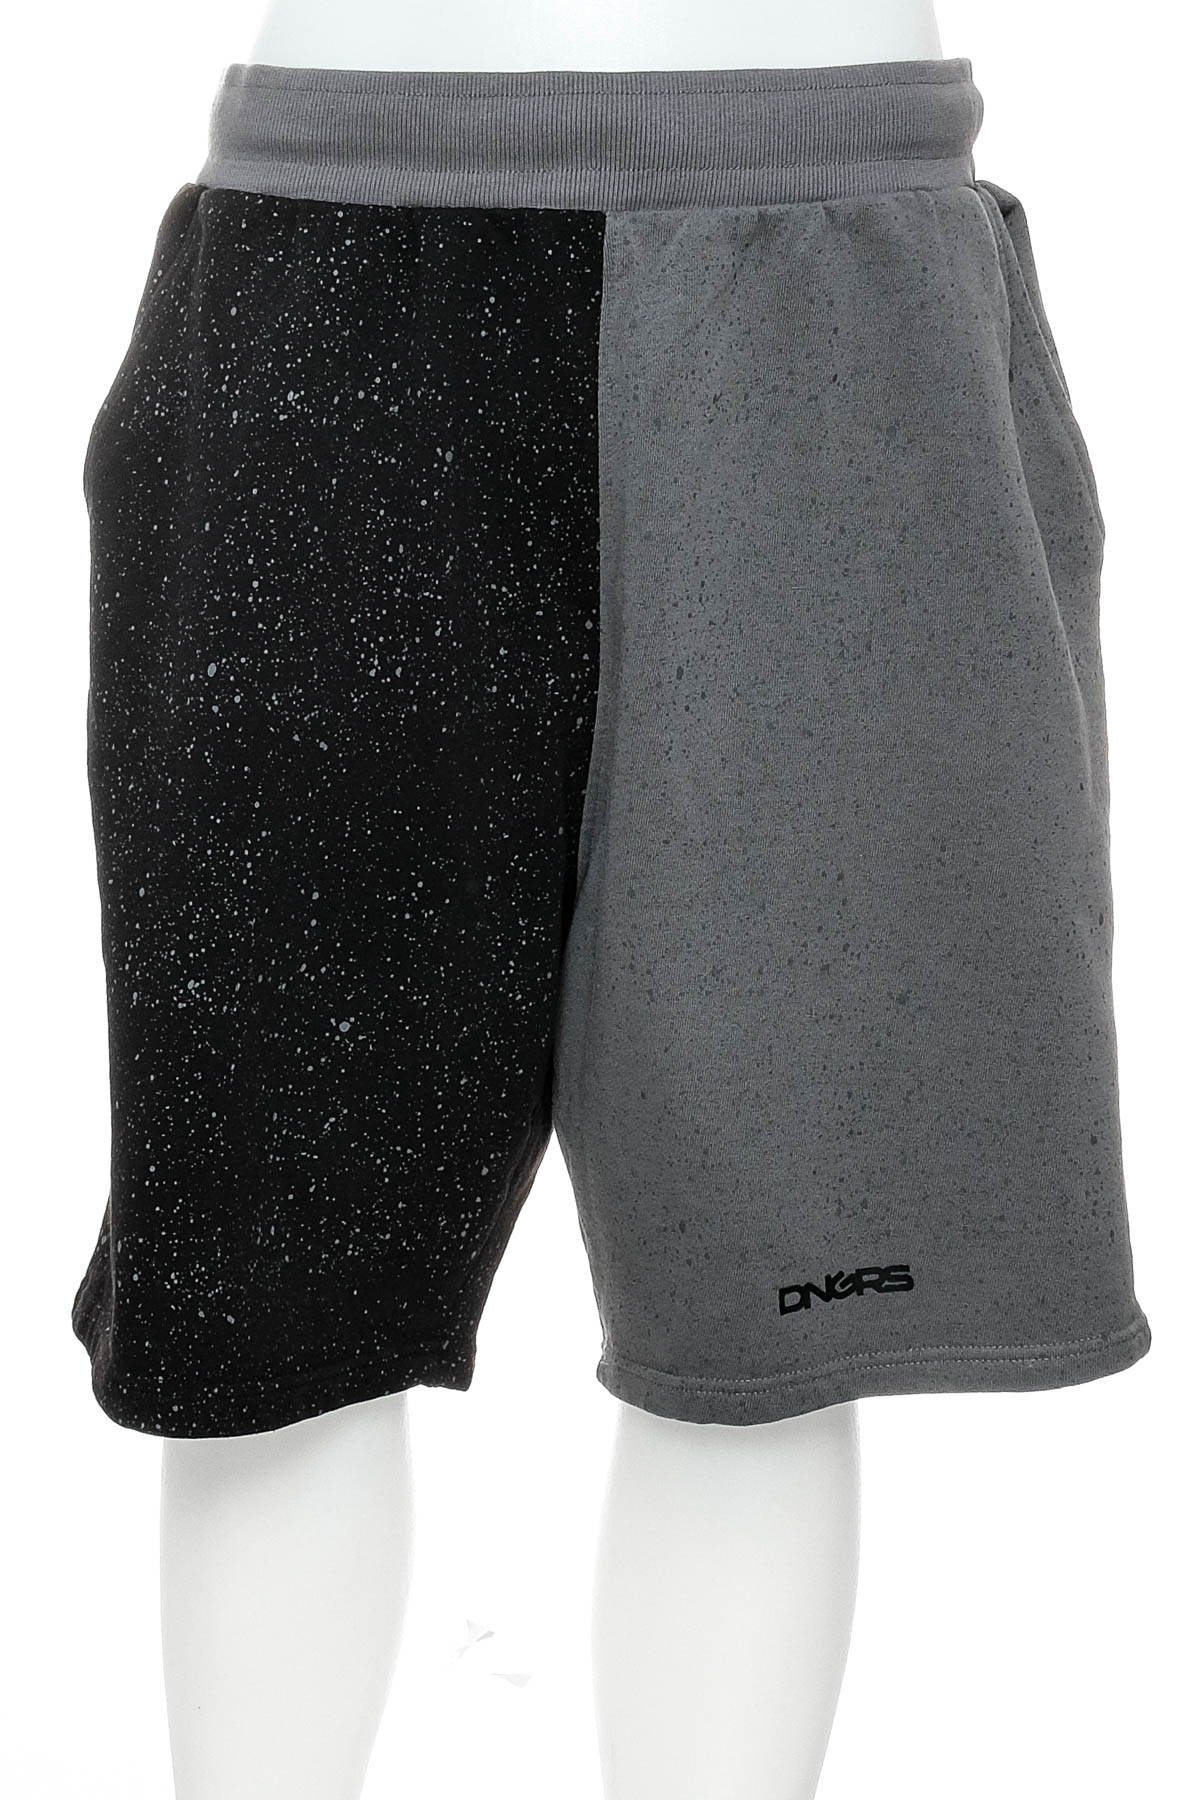 Men's shorts - DNGRS - 0